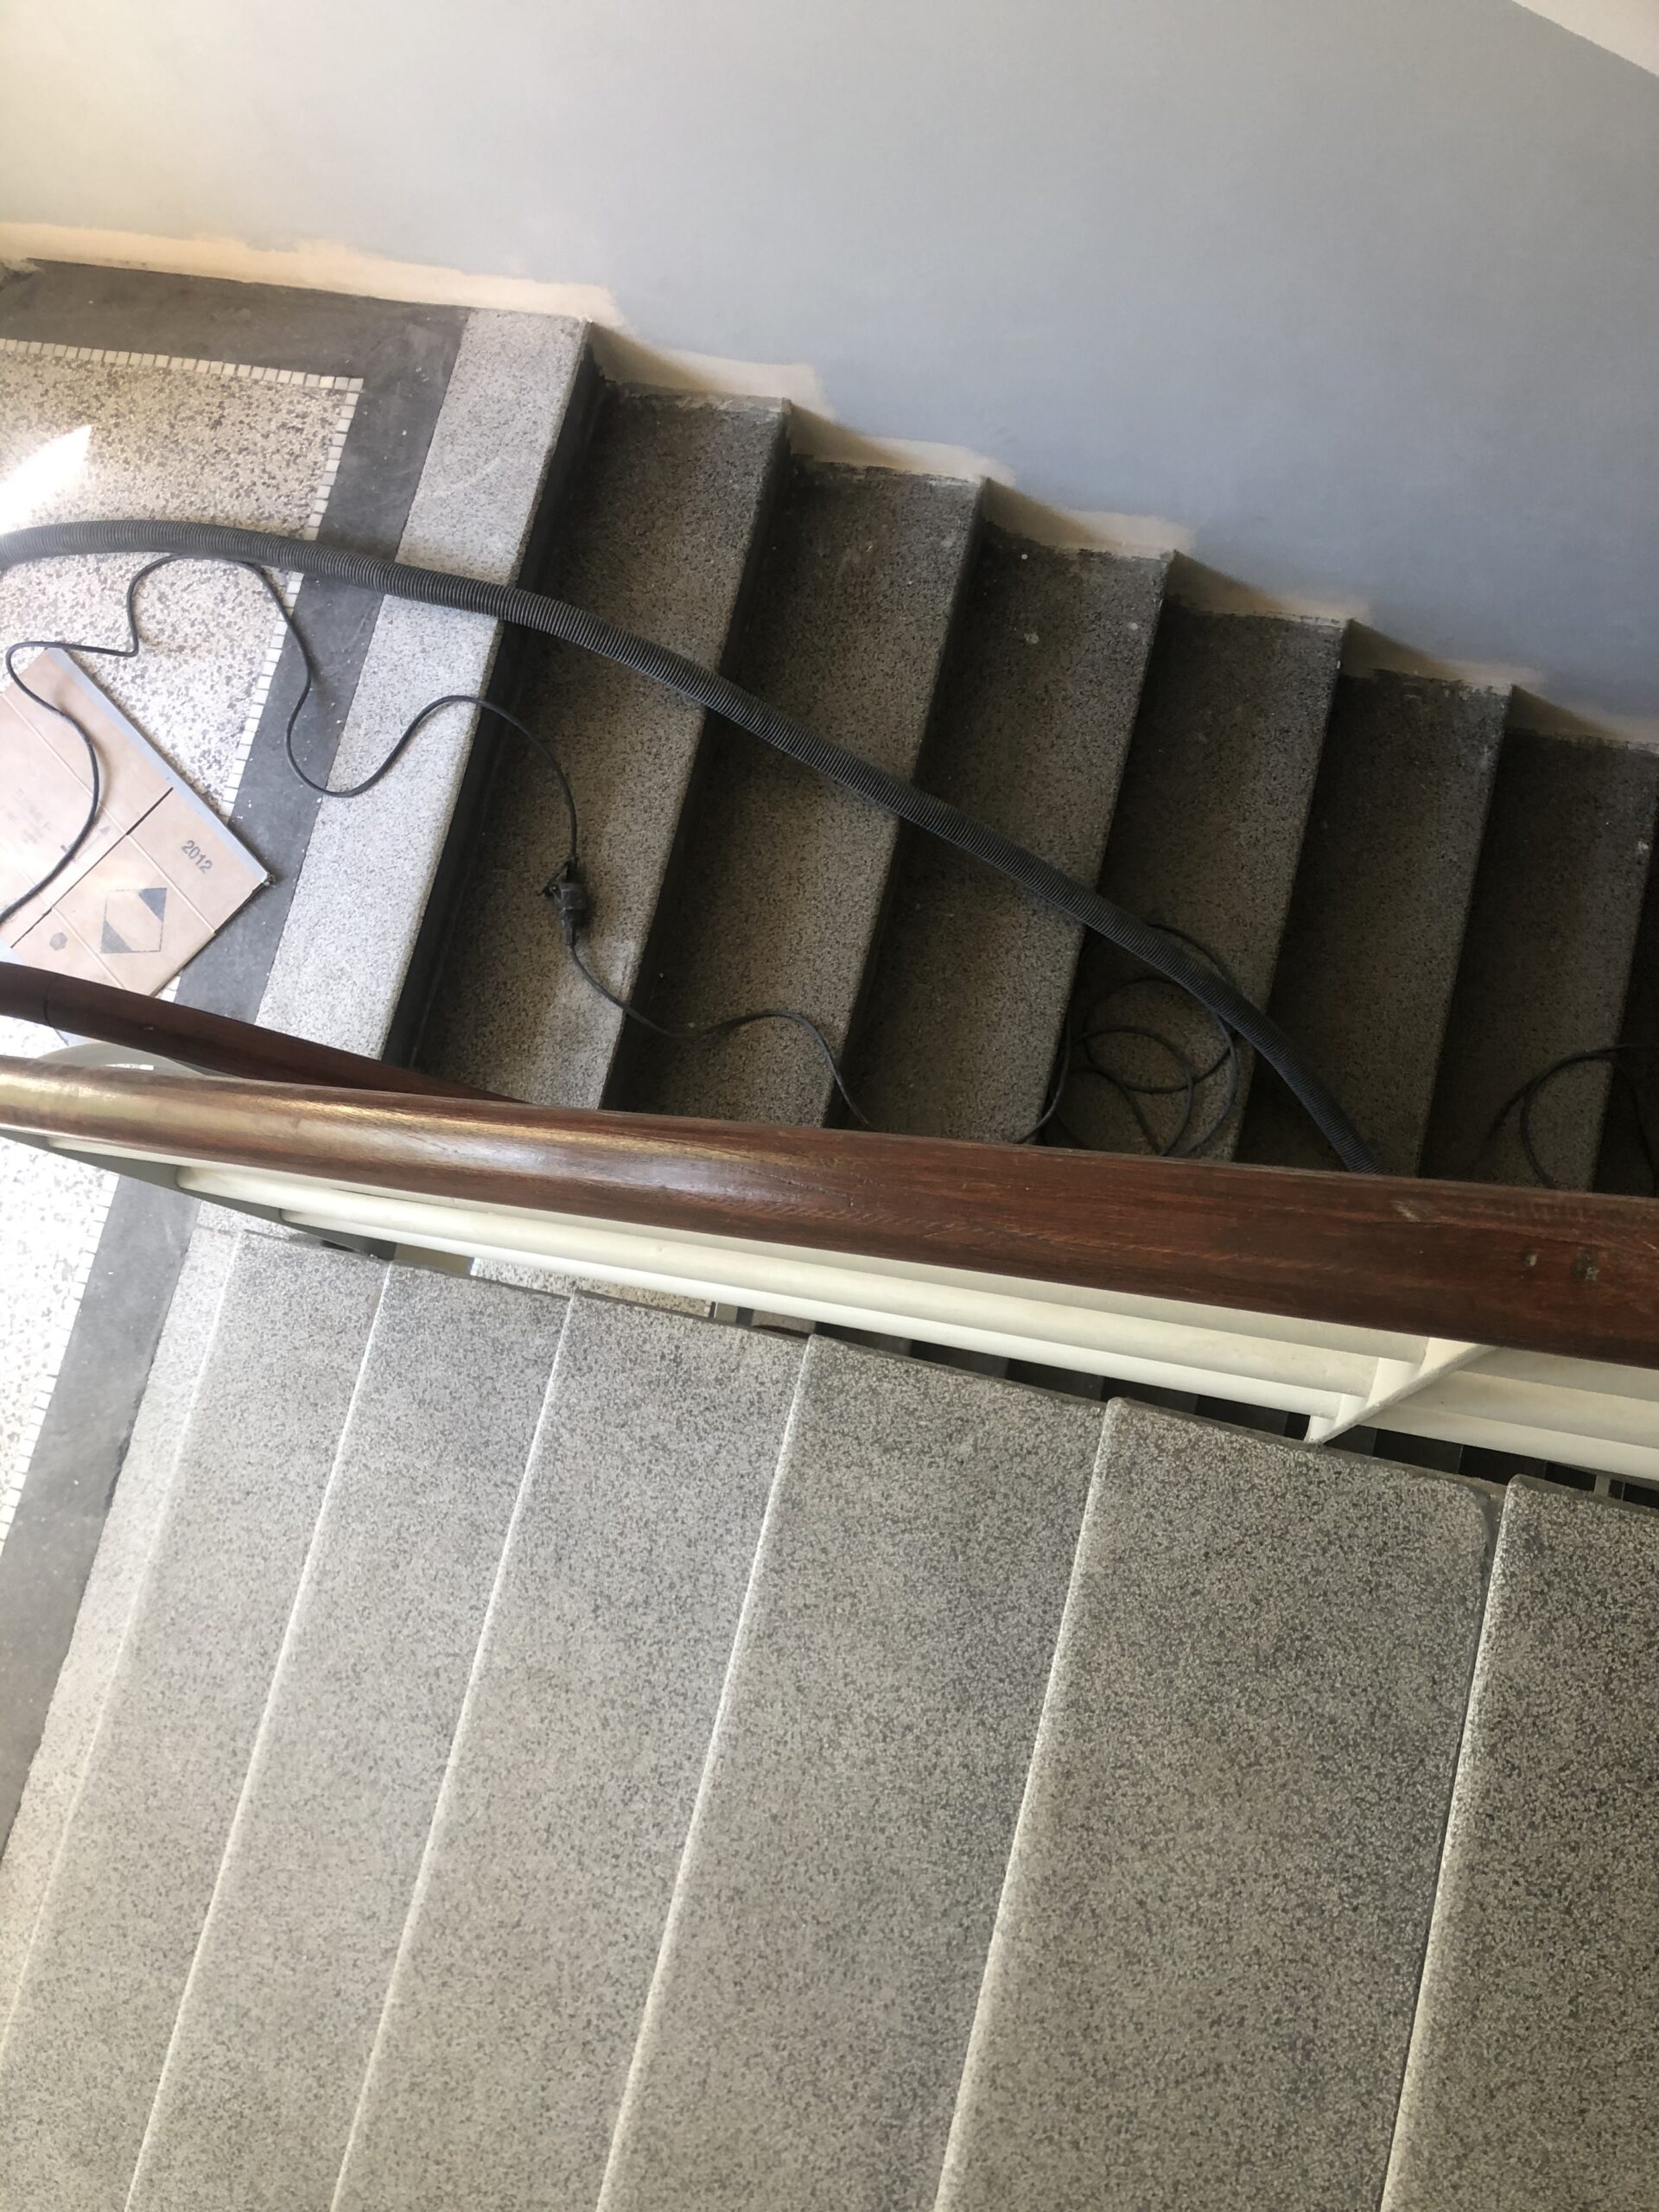 Broušené teracové schody